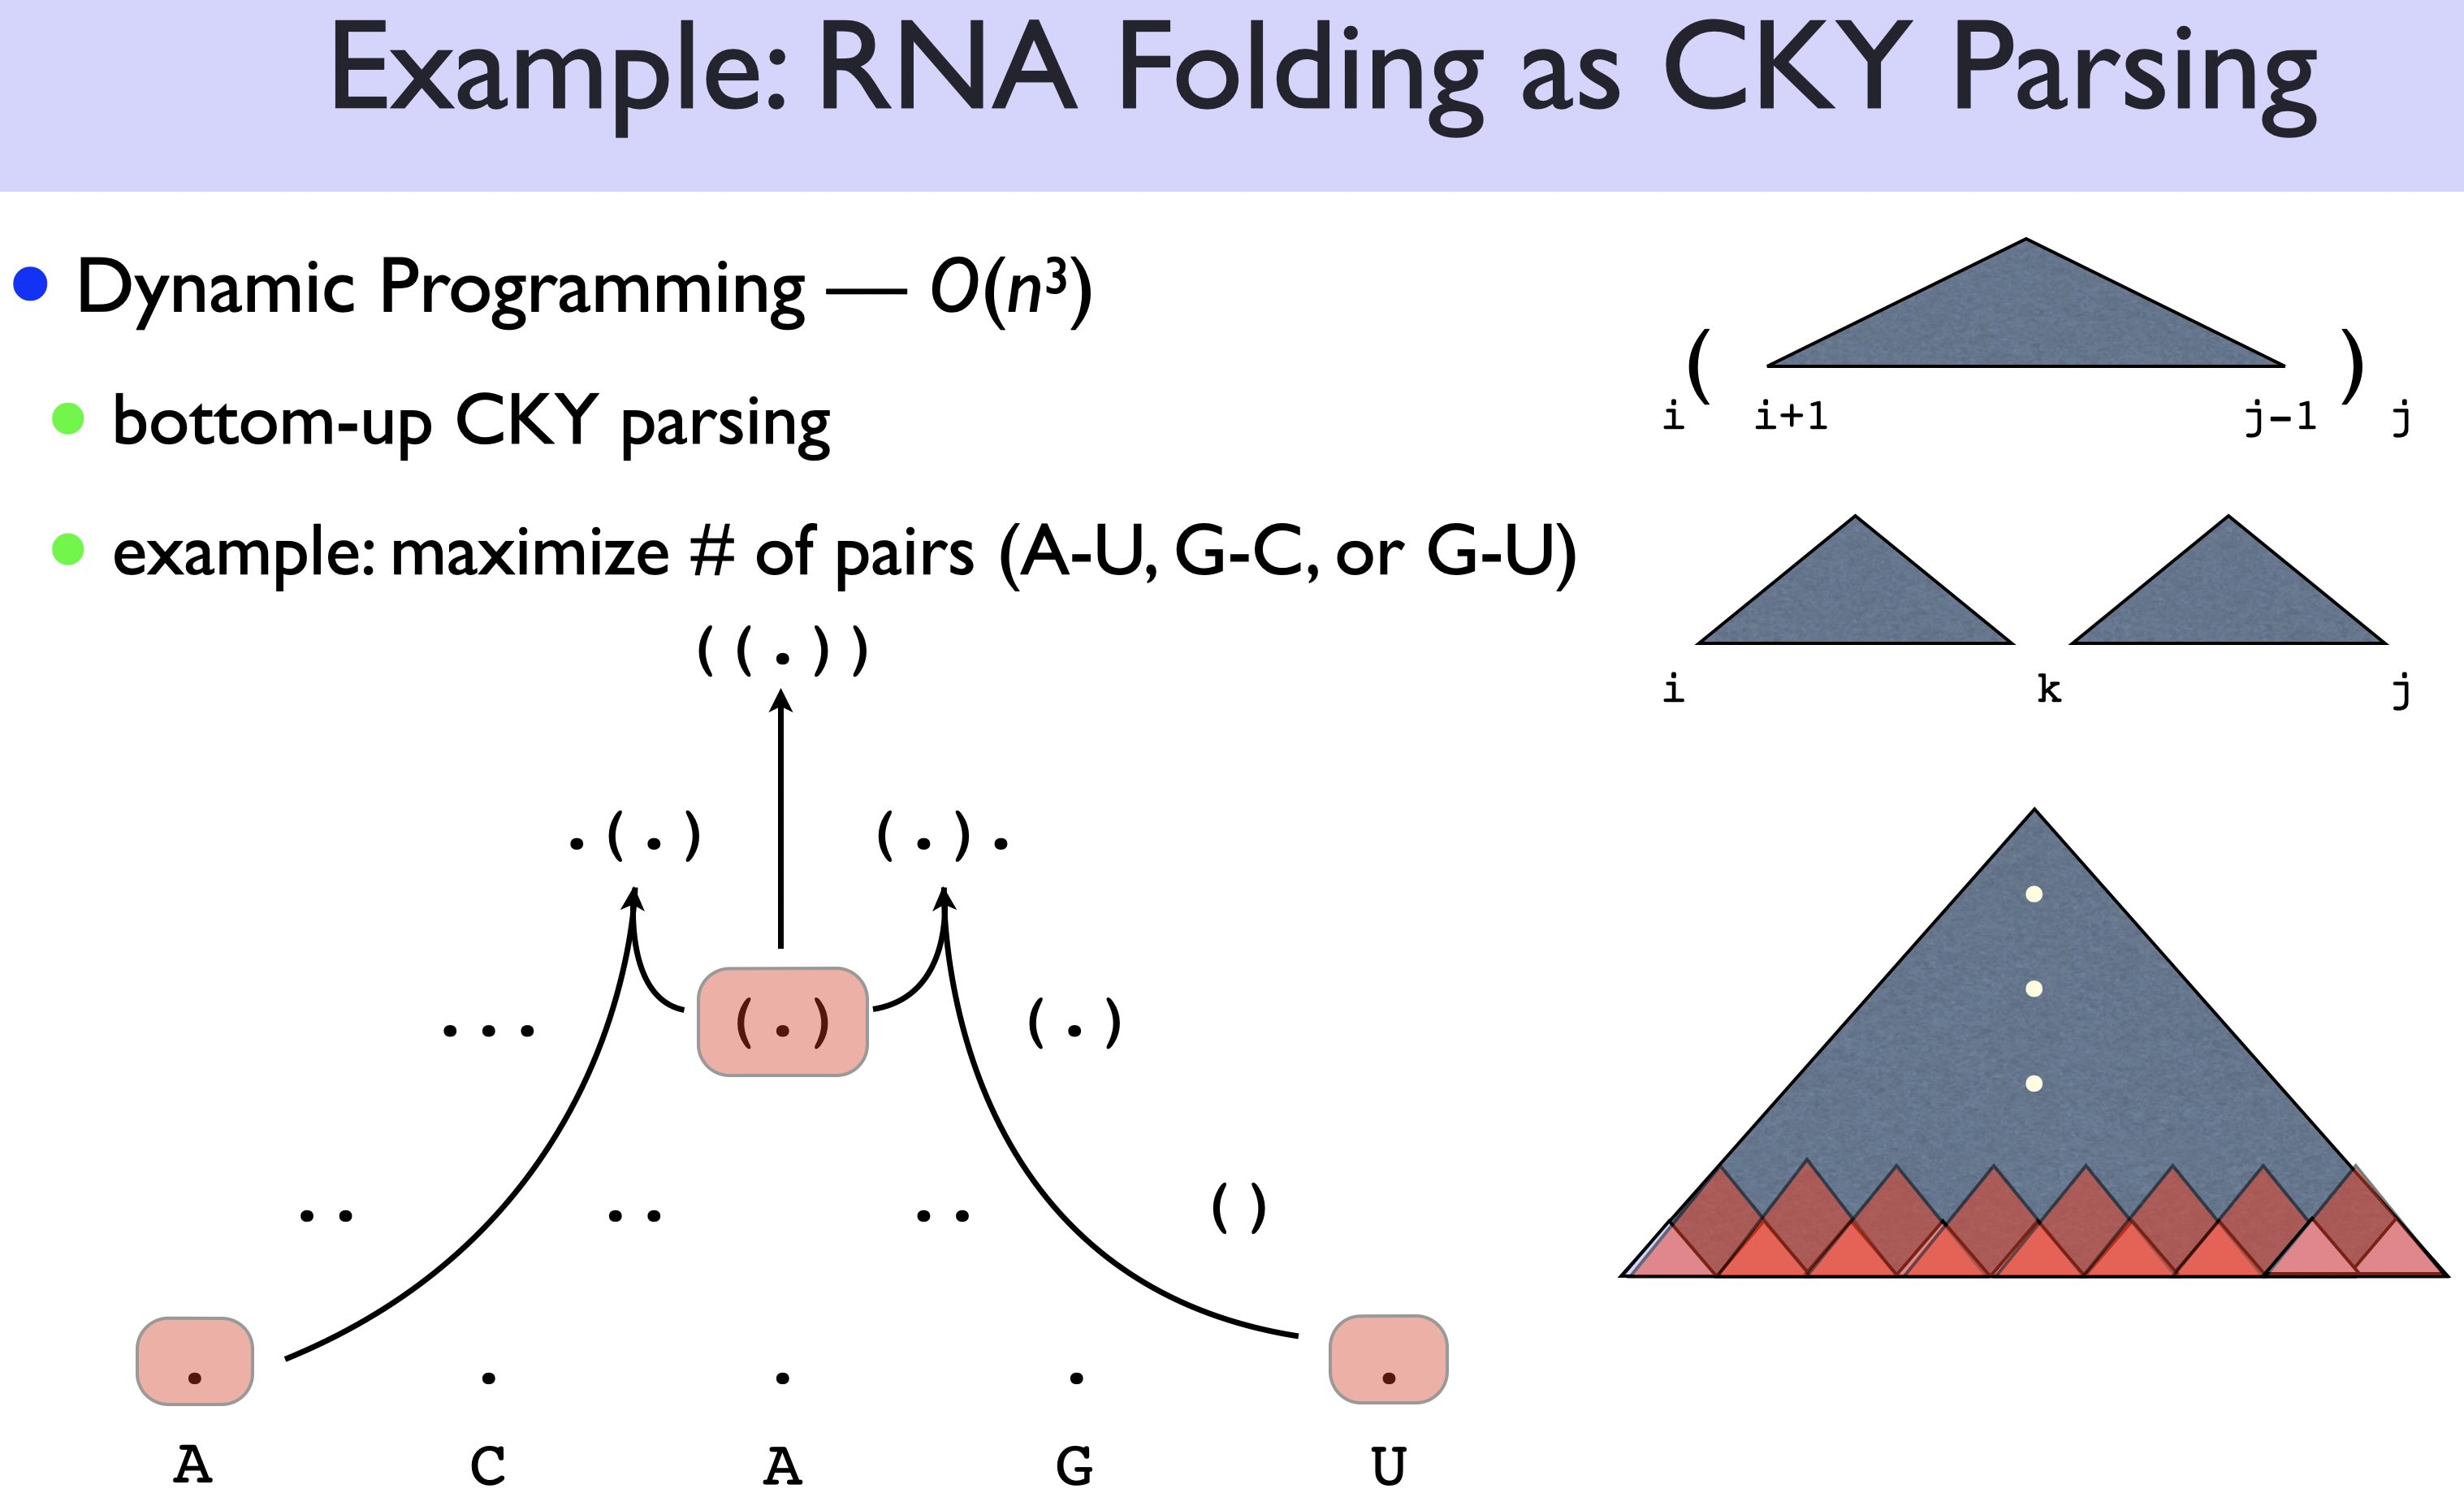 RNA folding as CKY